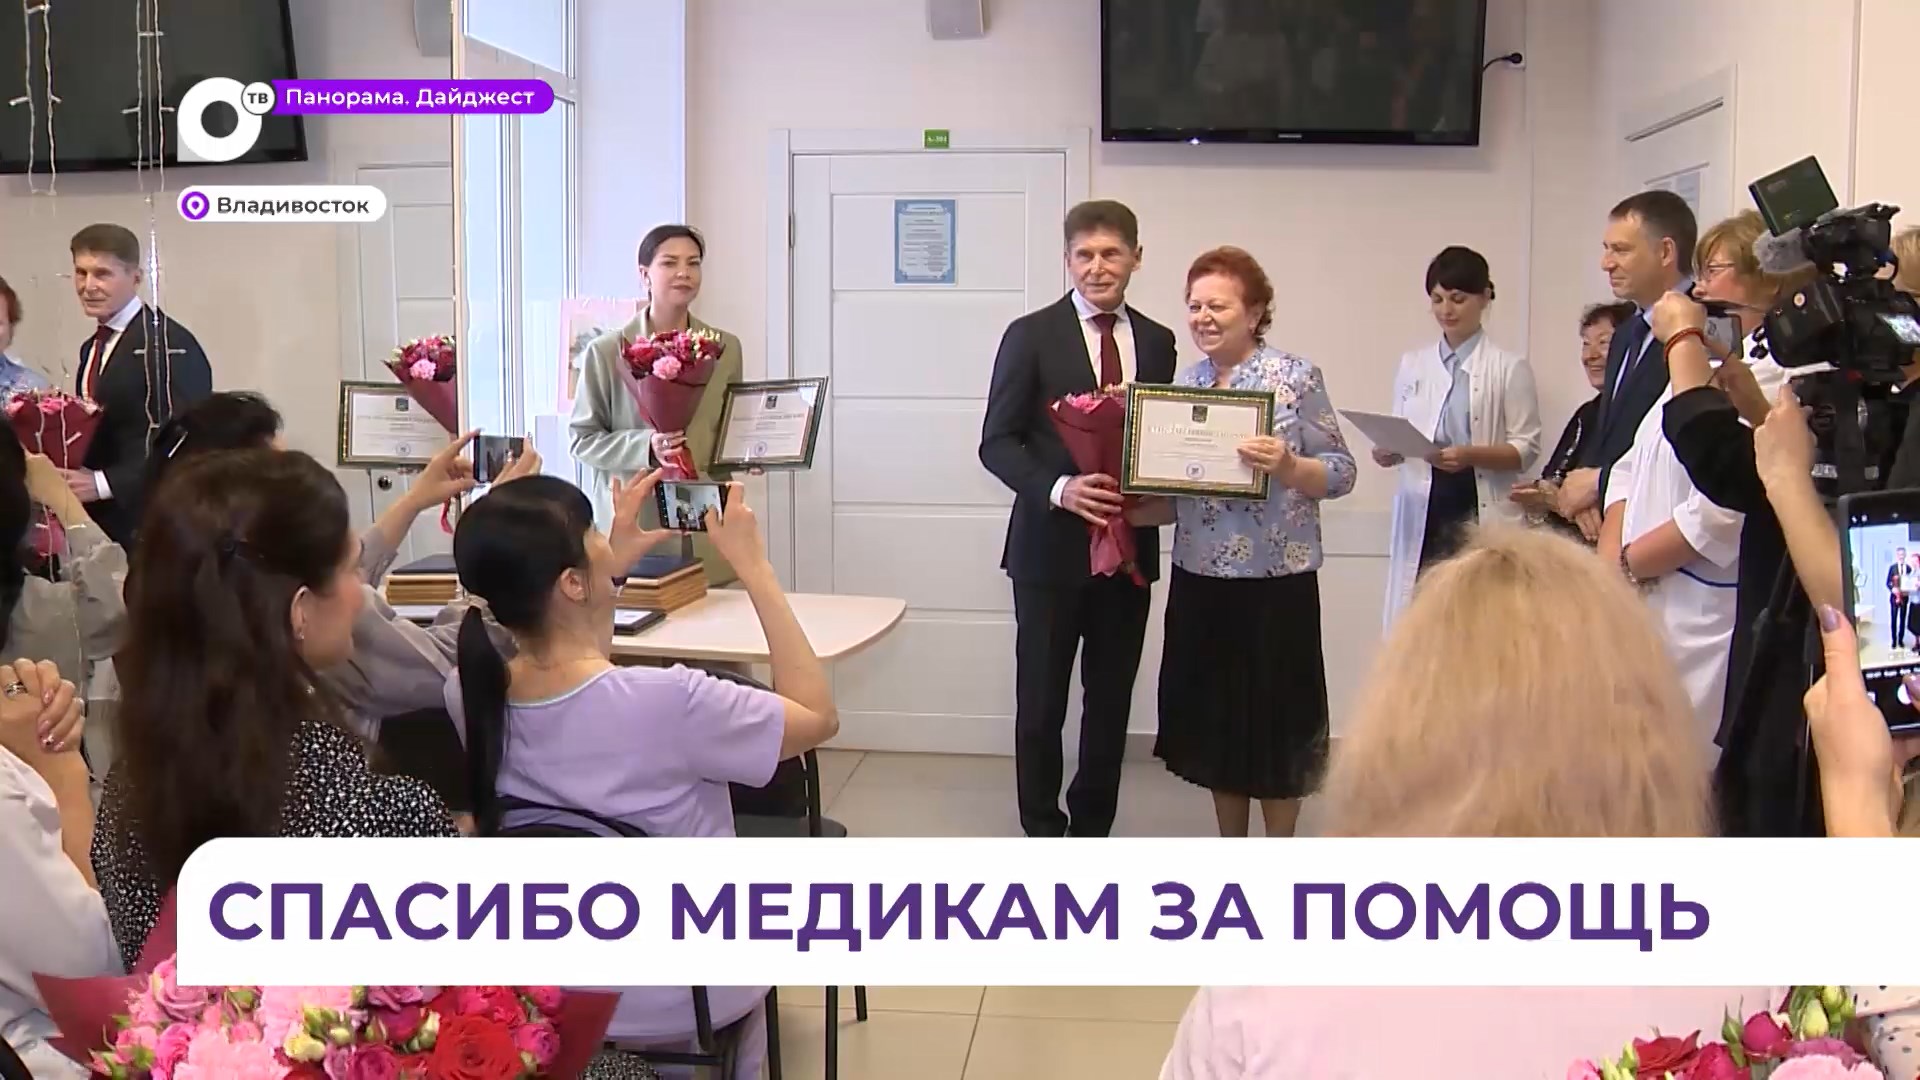 Олег Кожемяко поздравил медработников с профессиональным праздником